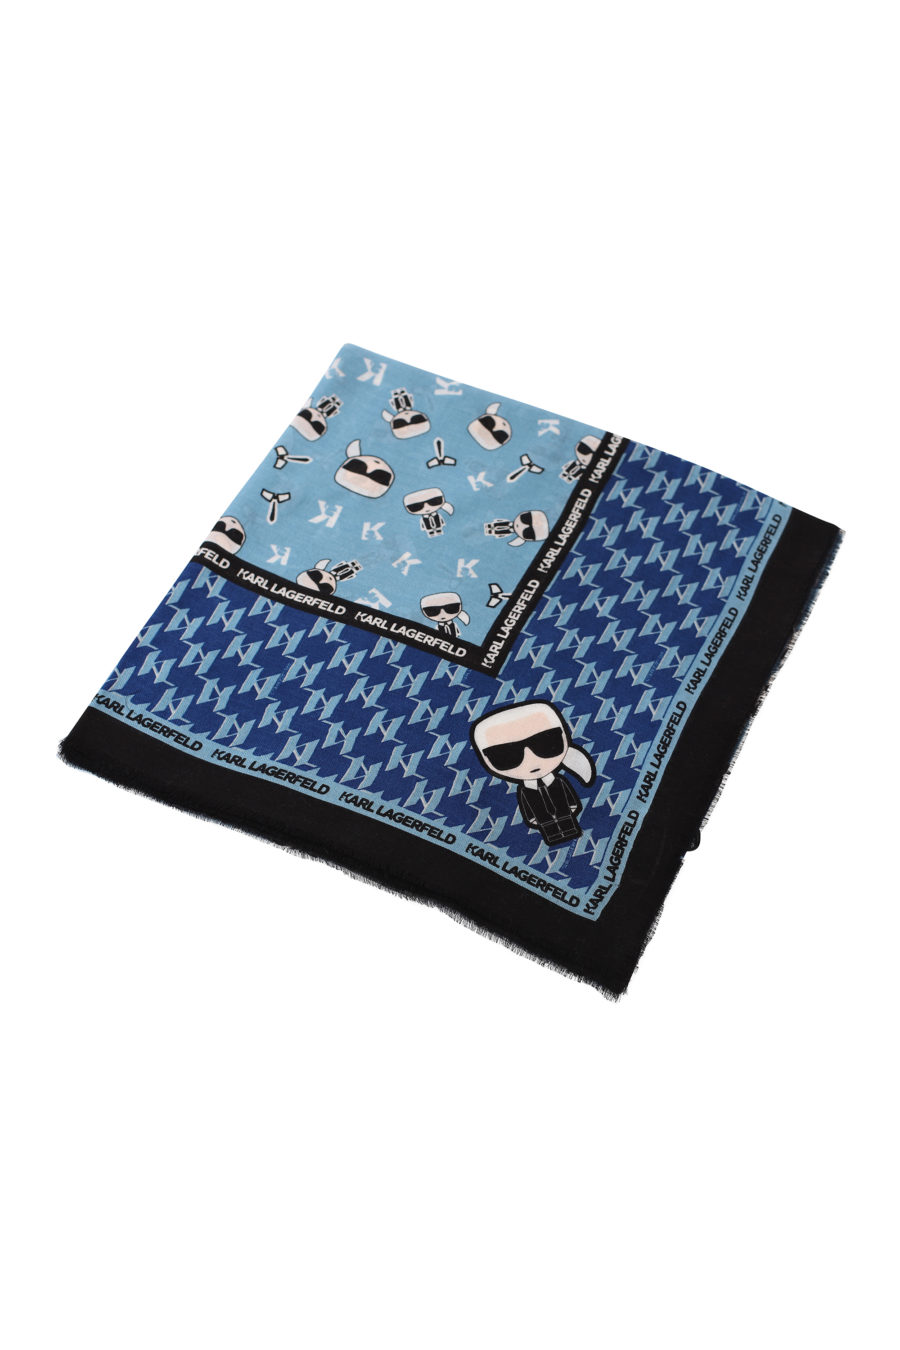 Blaues Halstuch mit Markenlogo - IMG 1485